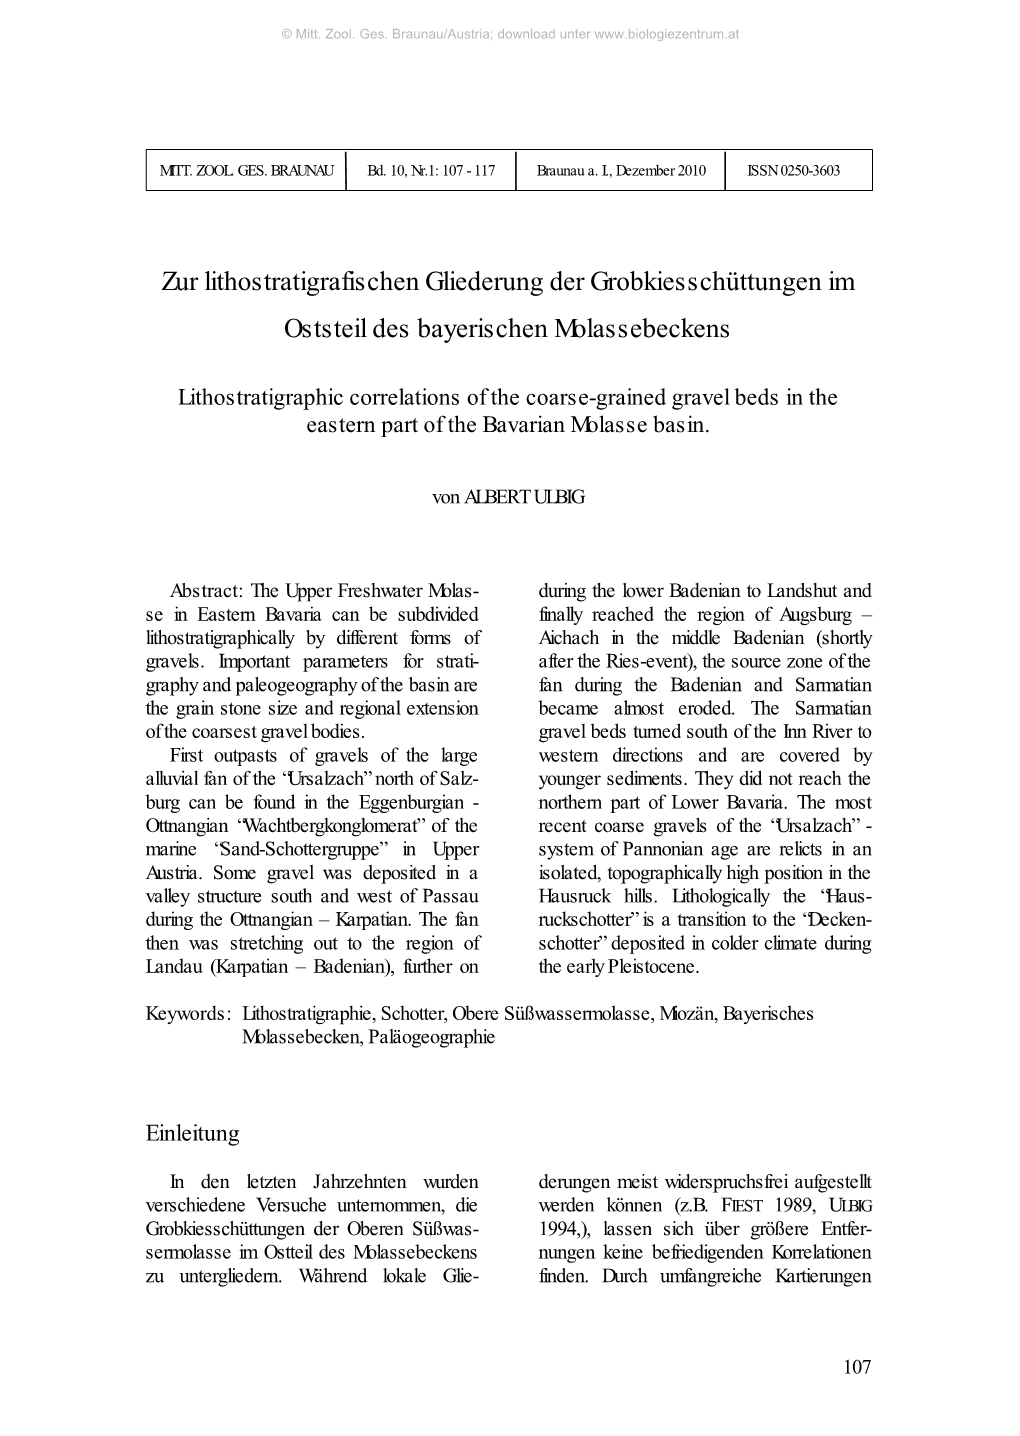 Zur Lithostratigrafischen Gliederung Der Grobkiesschüttungen Im Oststeil Des Bayerischen Molassebeckens